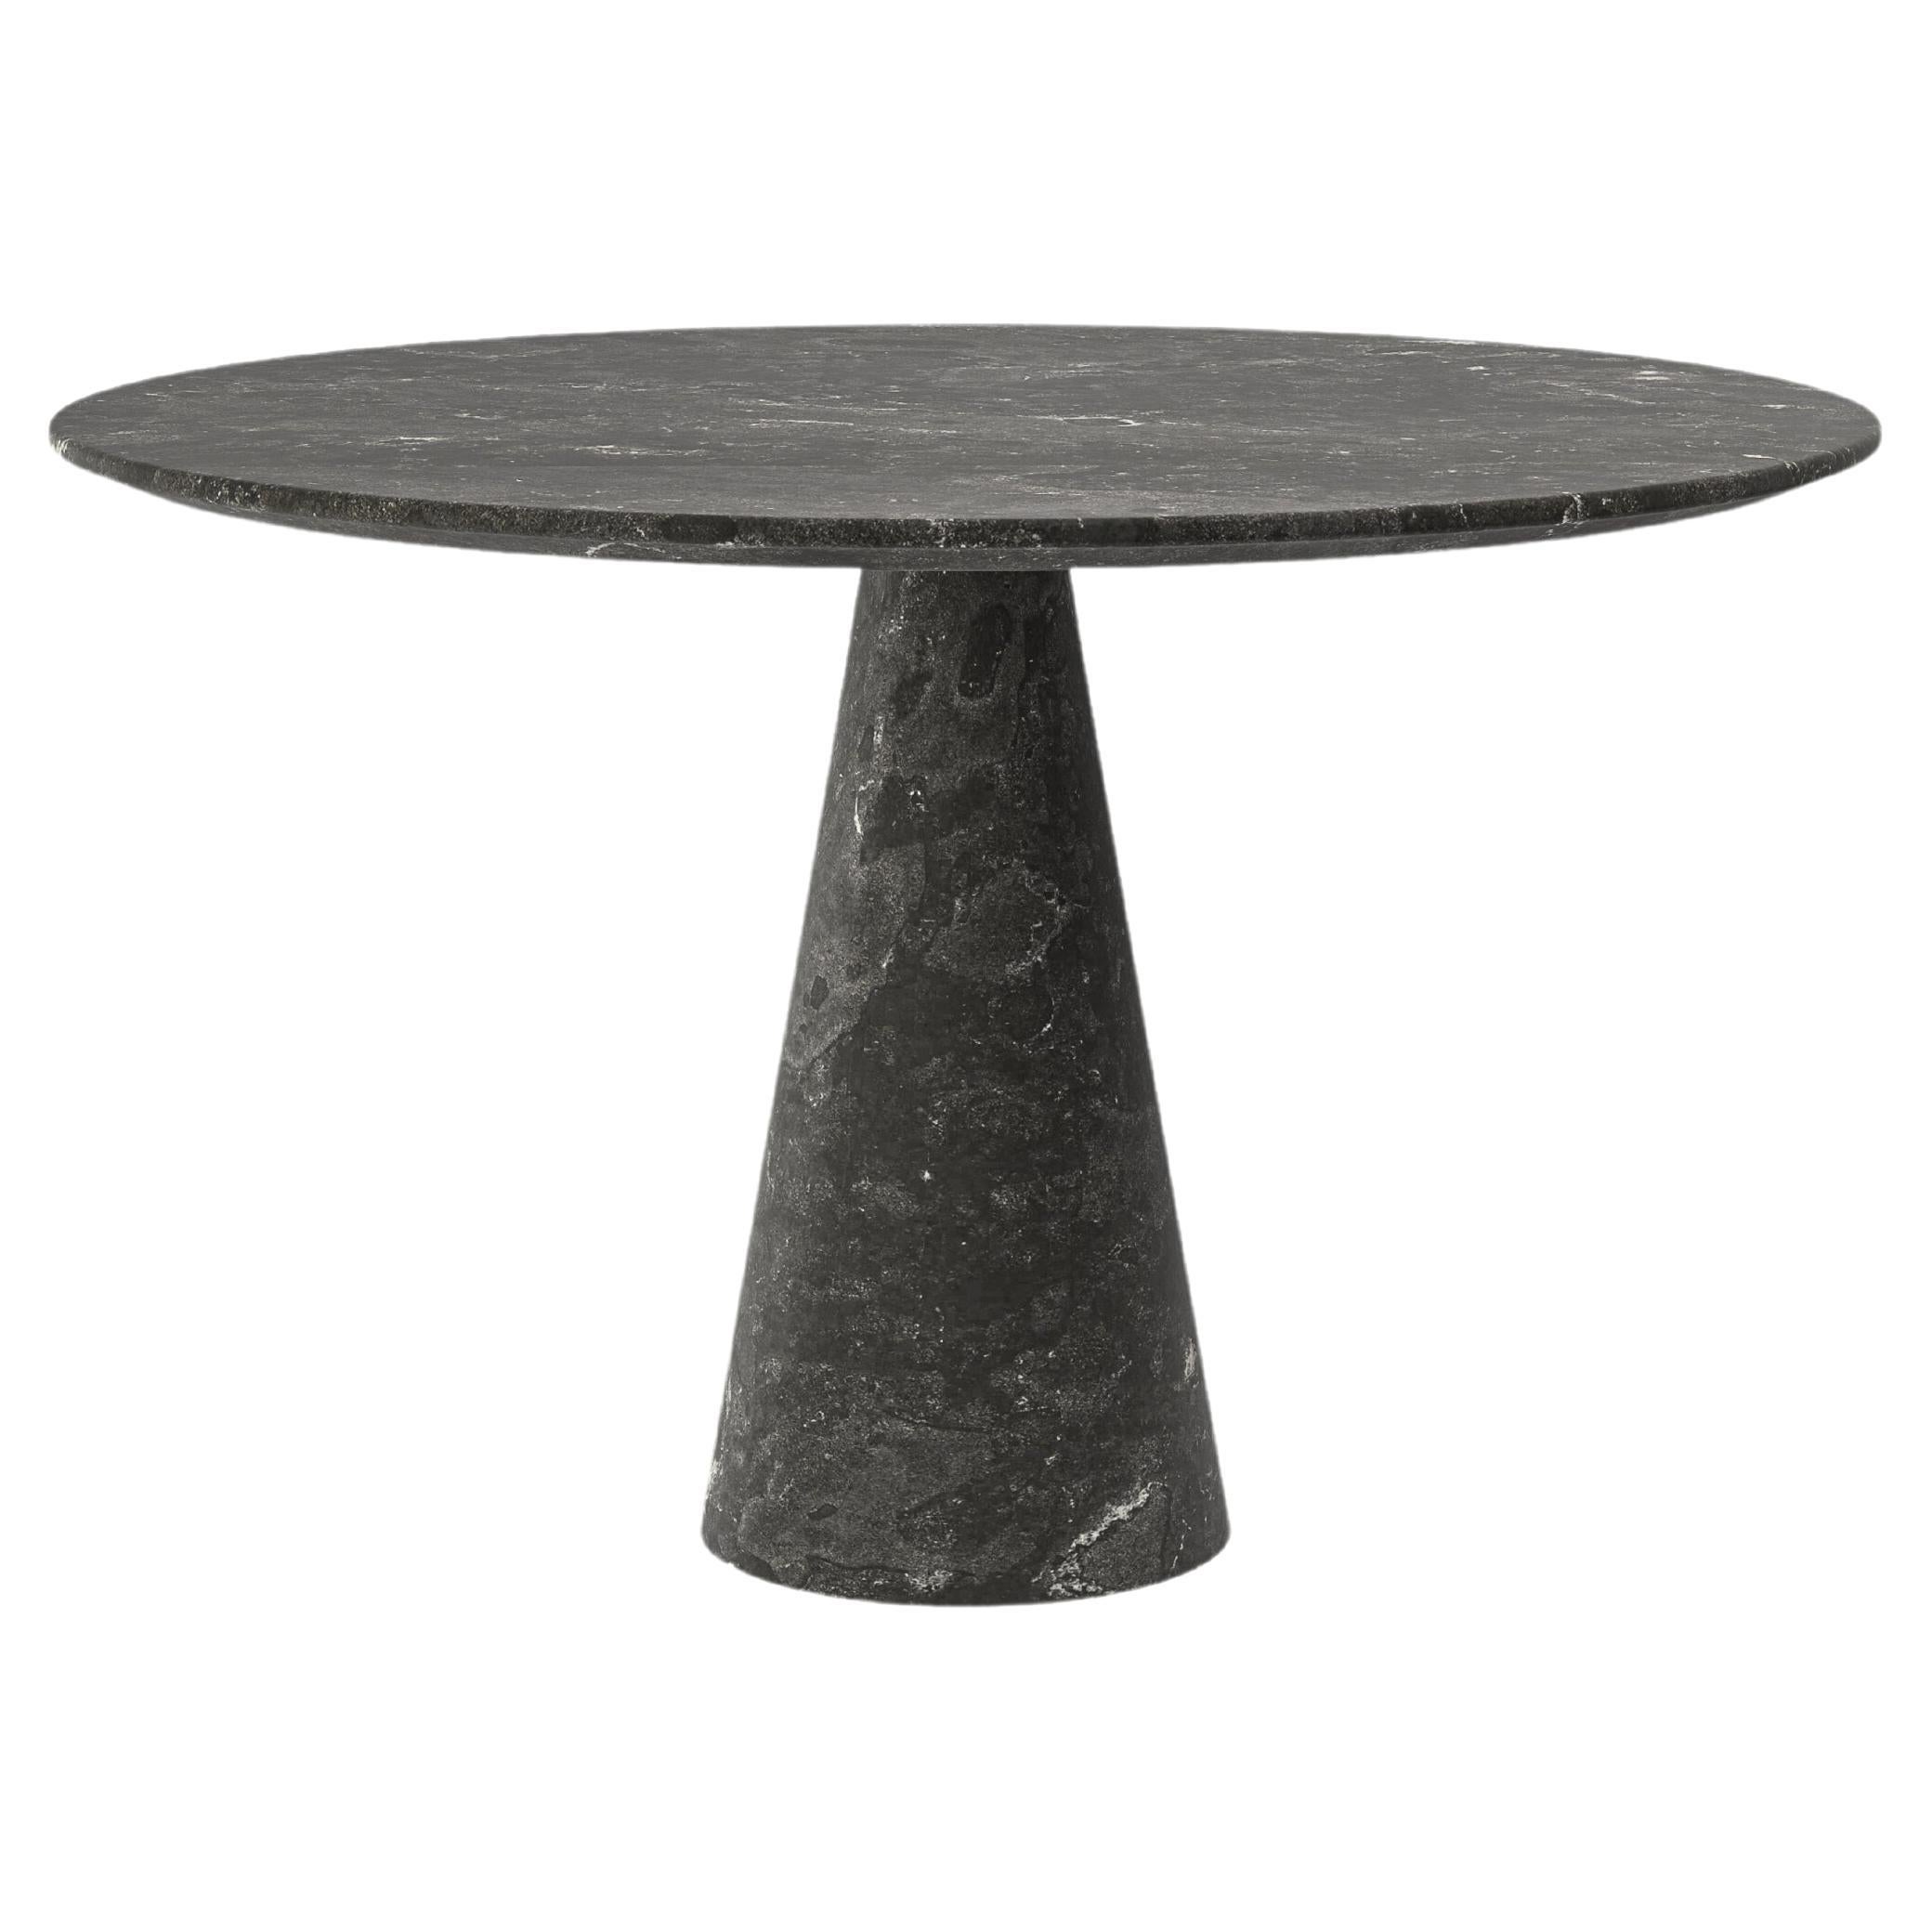 FORM(LA) Cono Round Dining Table 54”L x 54"W x 30”H Nero Petite Granite